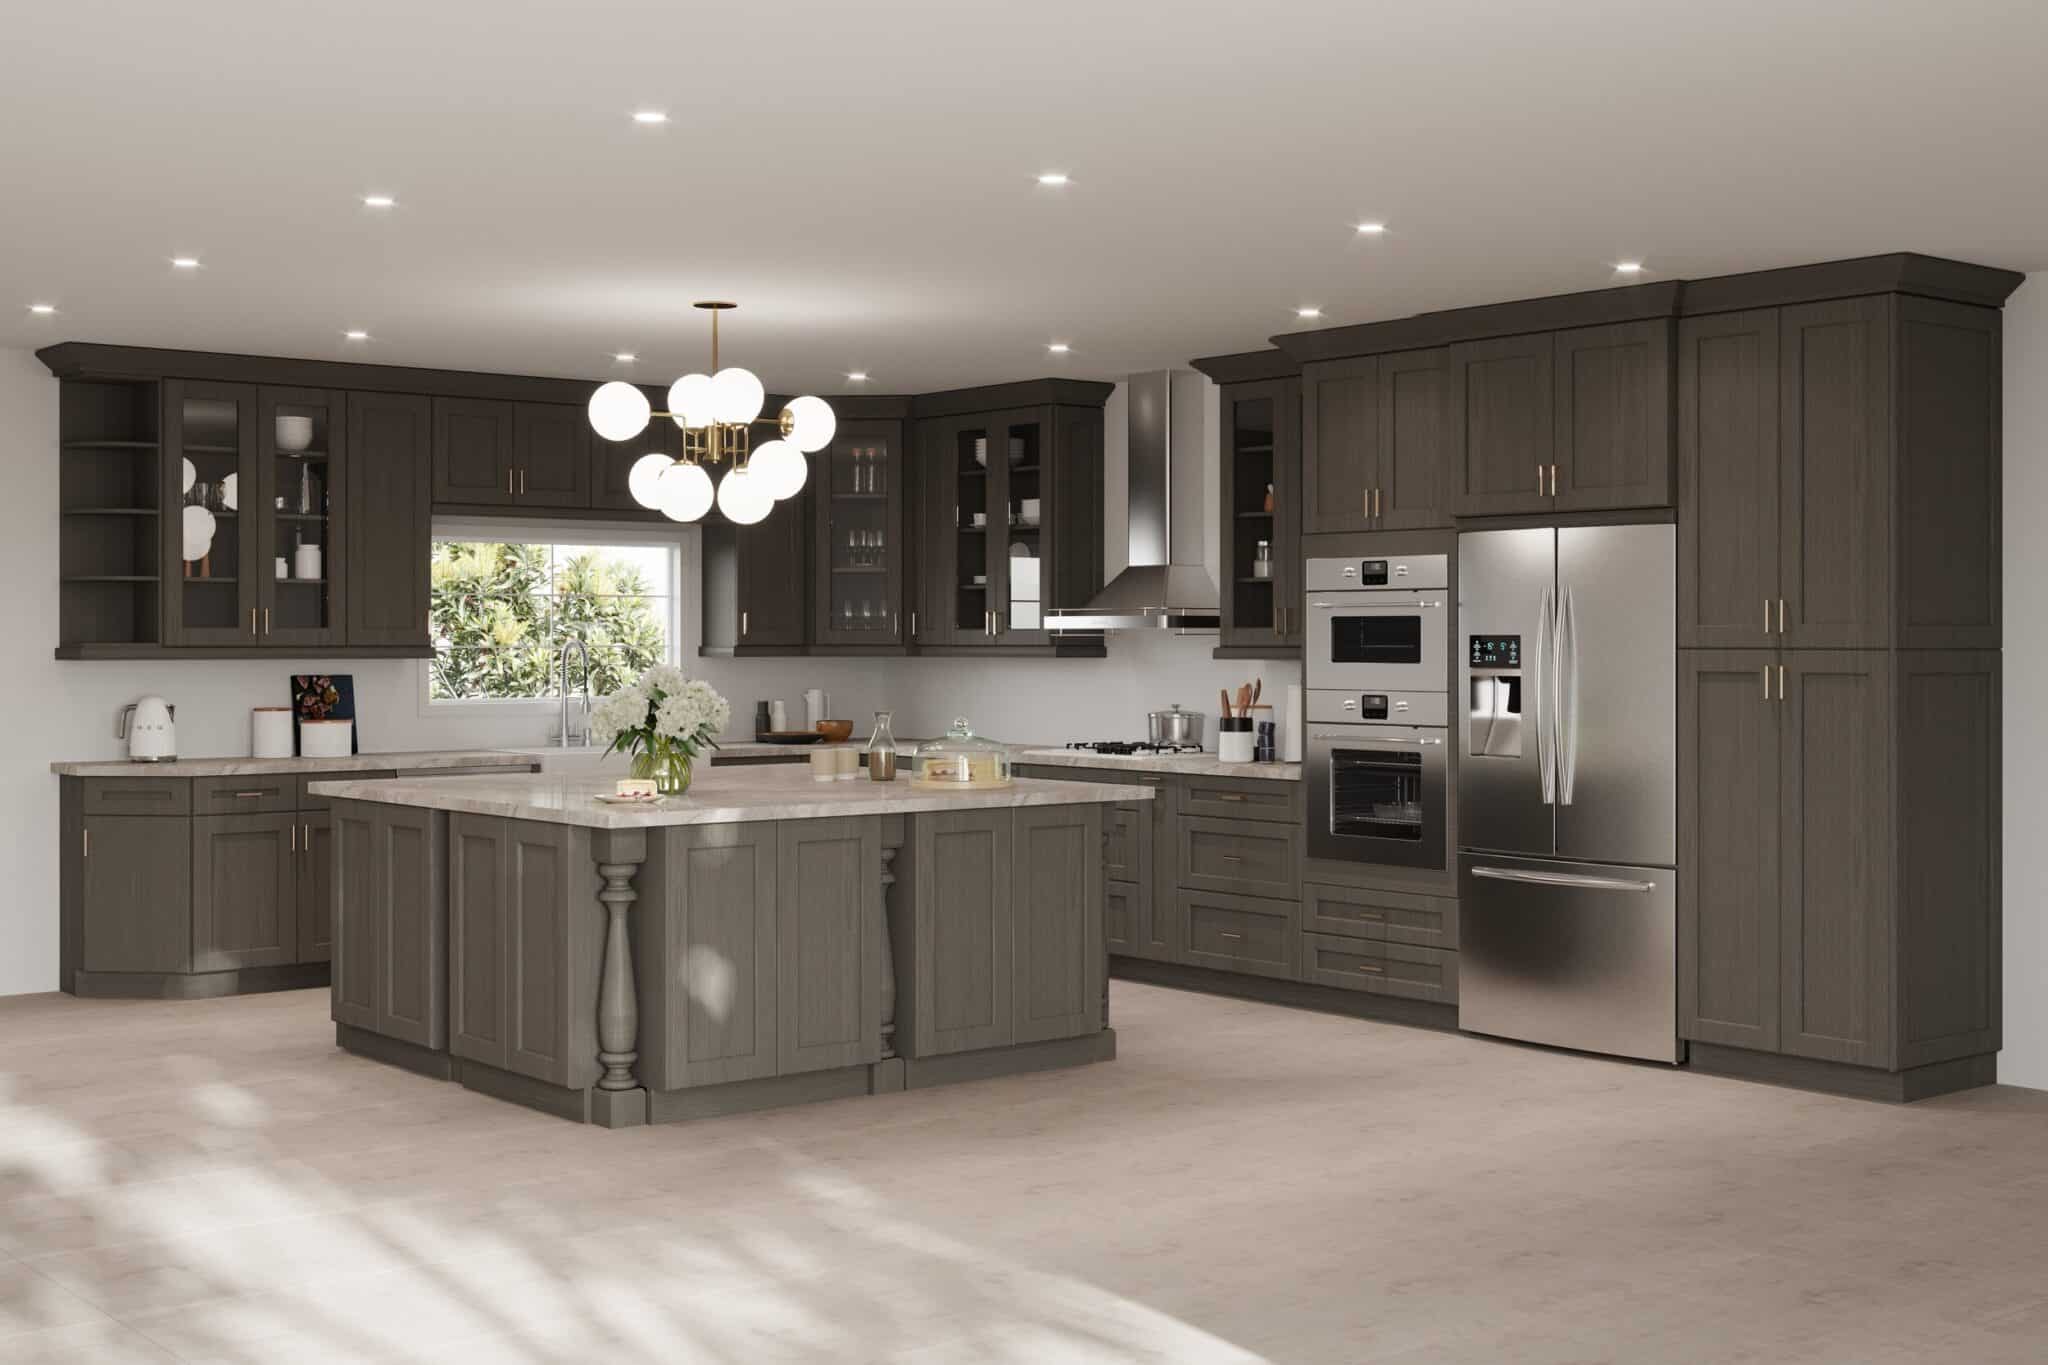 Adornus dark brown kitchen cabinets with light grey countertops